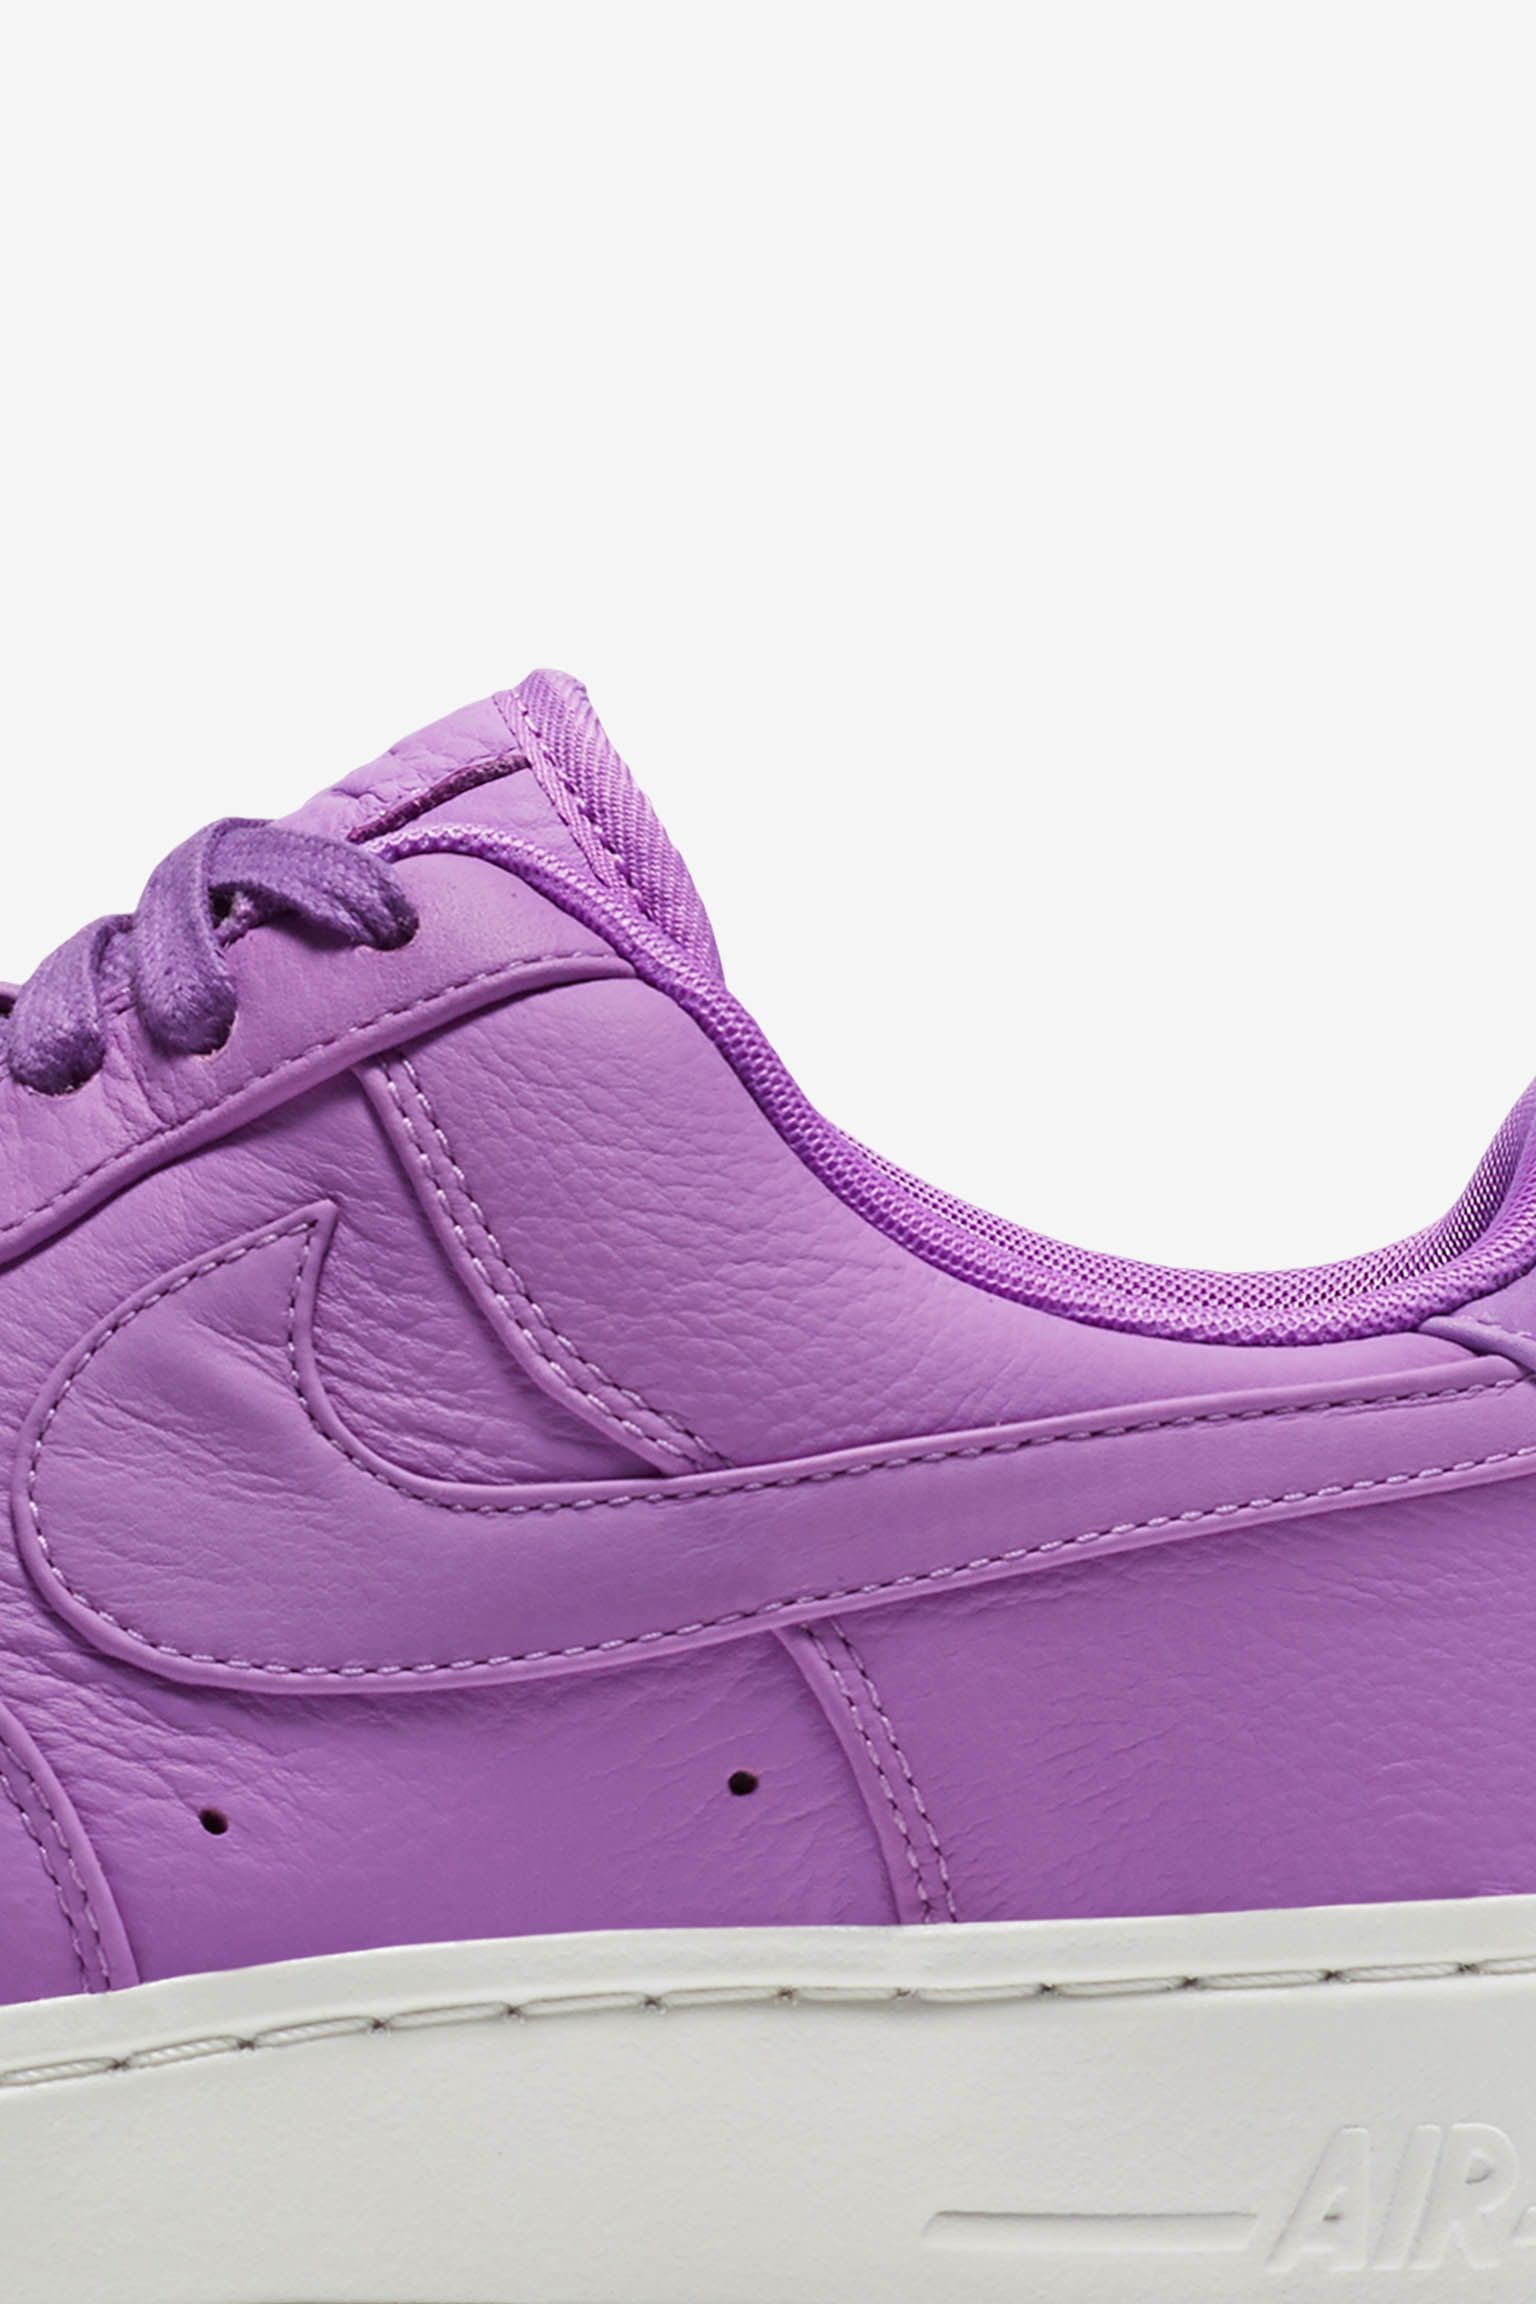 nike air force one purple